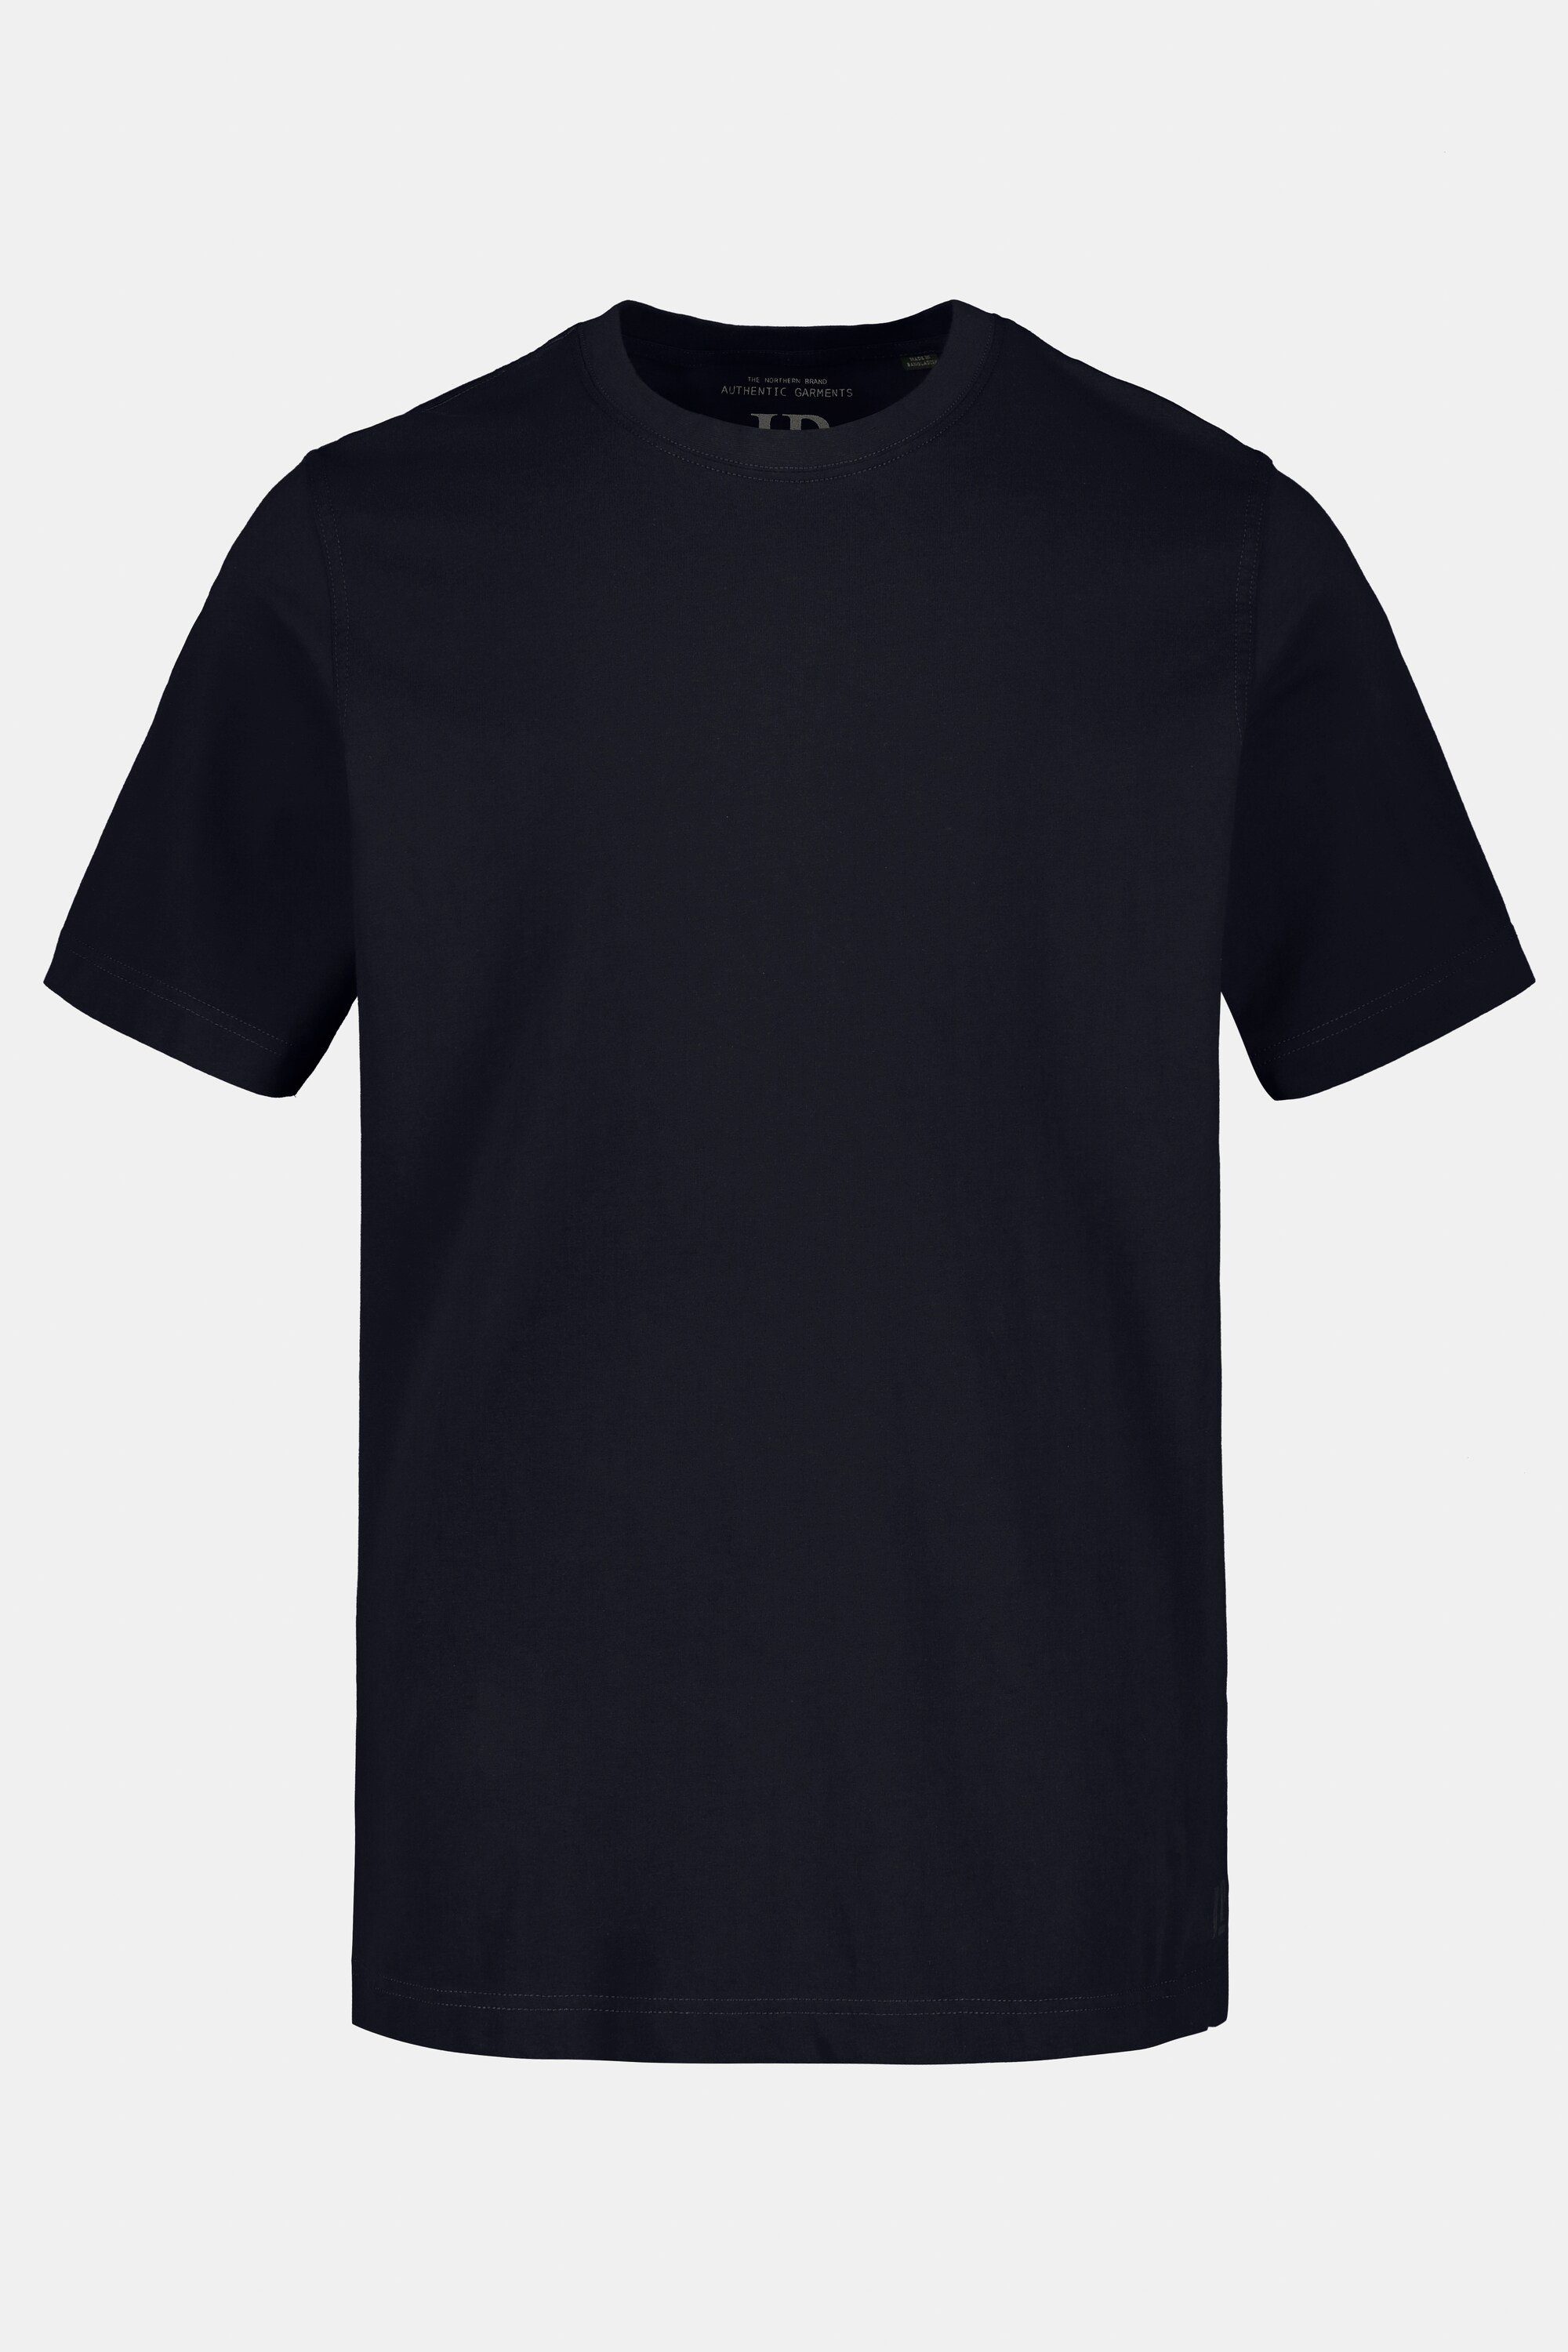 marine JP1880 T-Shirt gekämmte T-Shirt Rundhals bis 8XL Basic Baumwolle dunkel